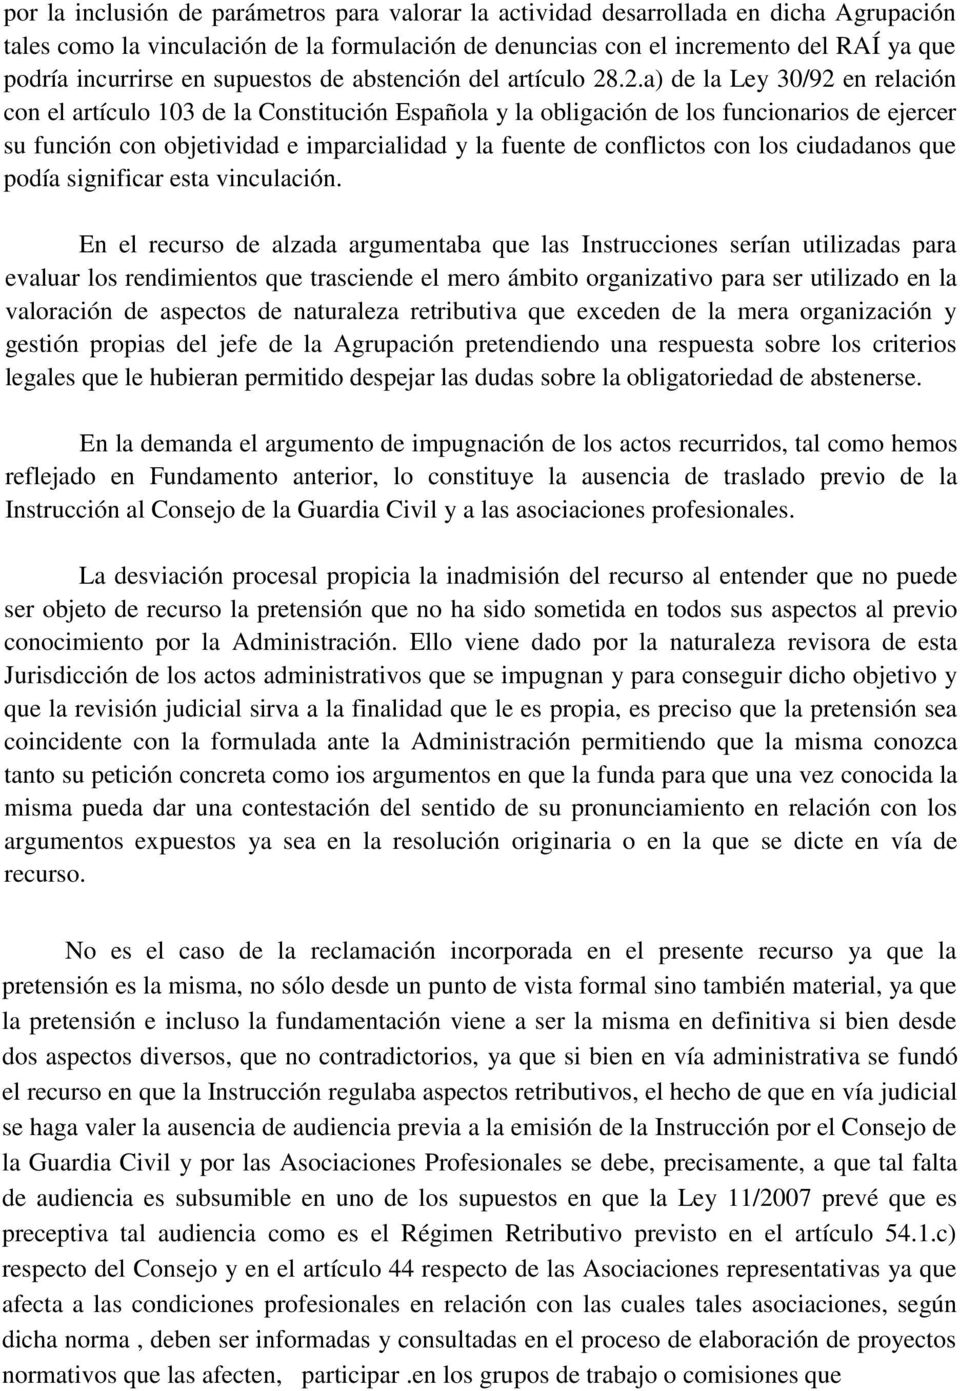 .2.a) de la Ley 30/92 en relación con el artículo 103 de la Constitución Española y la obligación de los funcionarios de ejercer su función con objetividad e imparcialidad y la fuente de conflictos